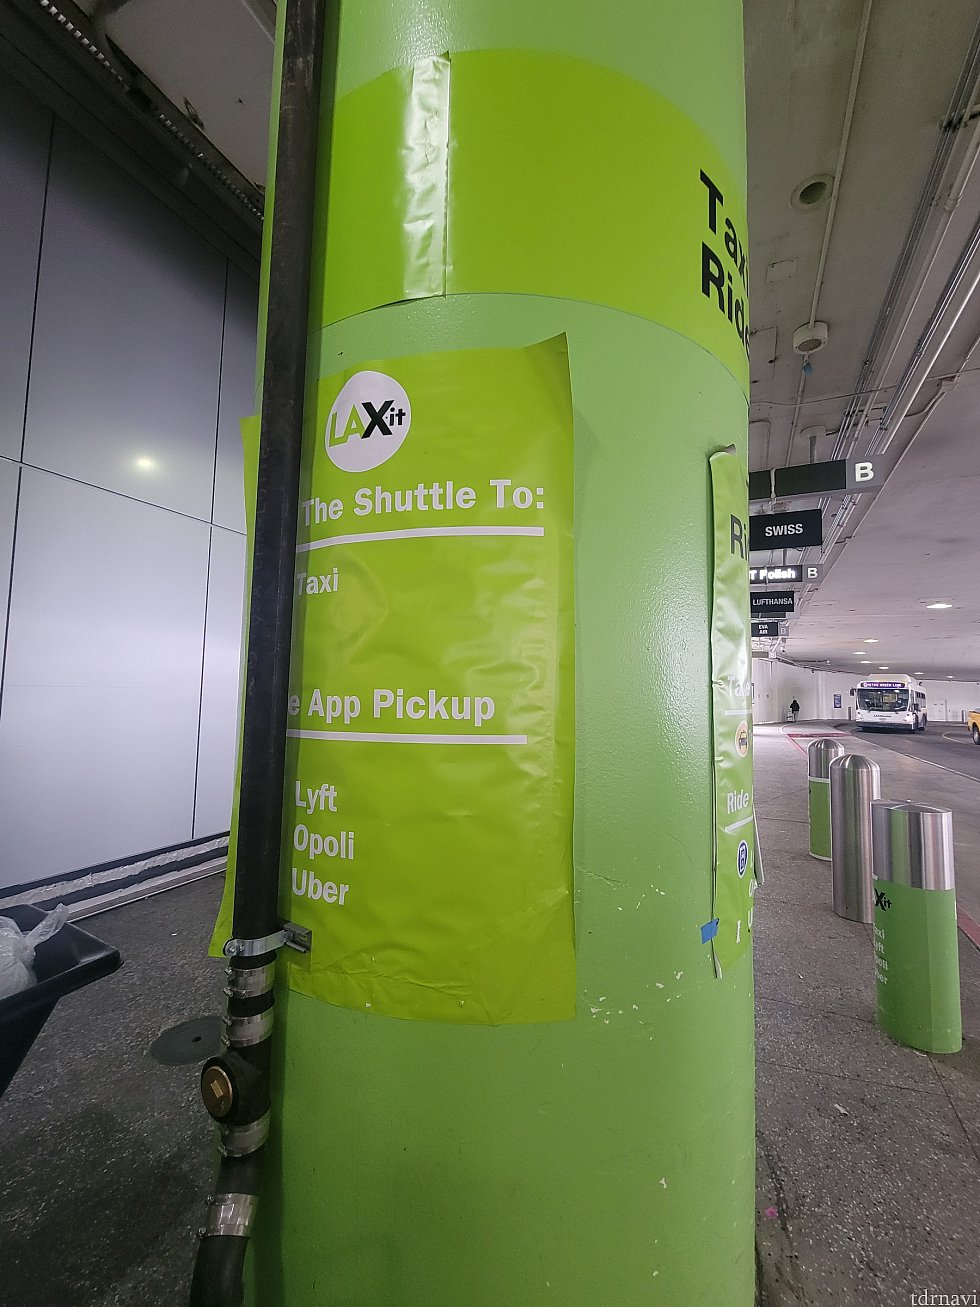 LAX-it 行きのバス乗場の目印は着緑色の柱です。